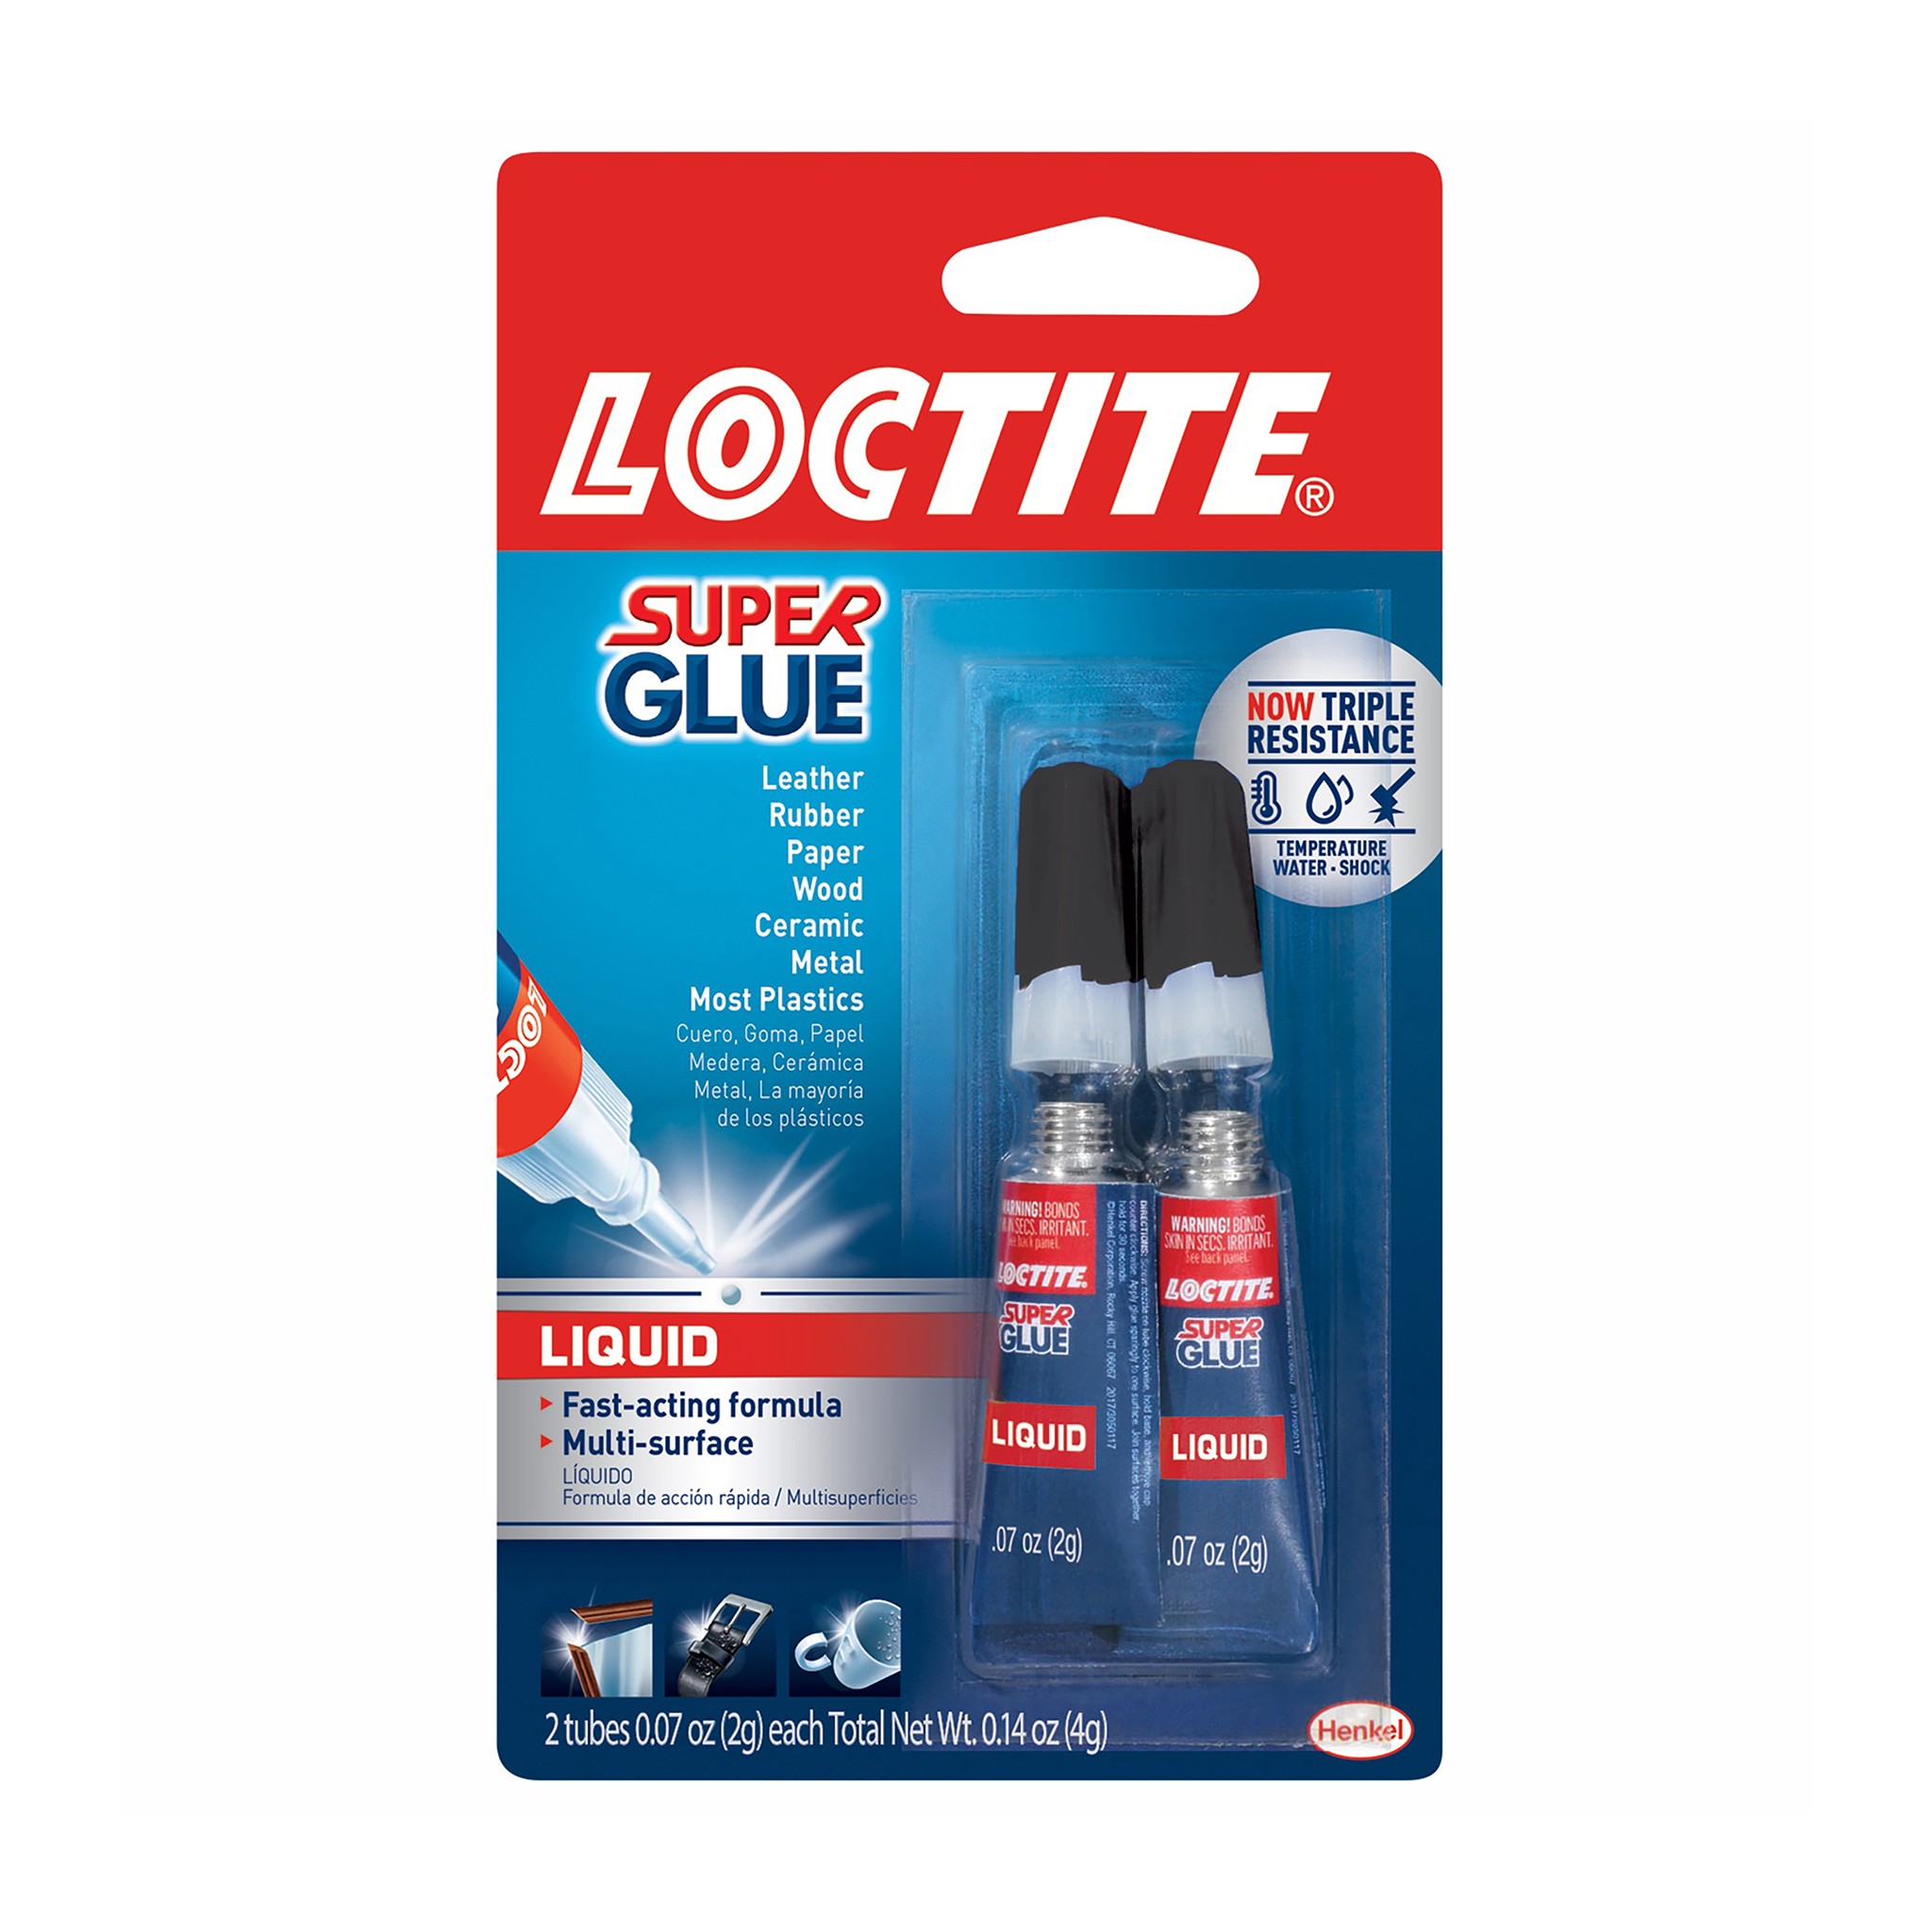 Super Glue-3 con Pincel Loctite 5g o 5+2g